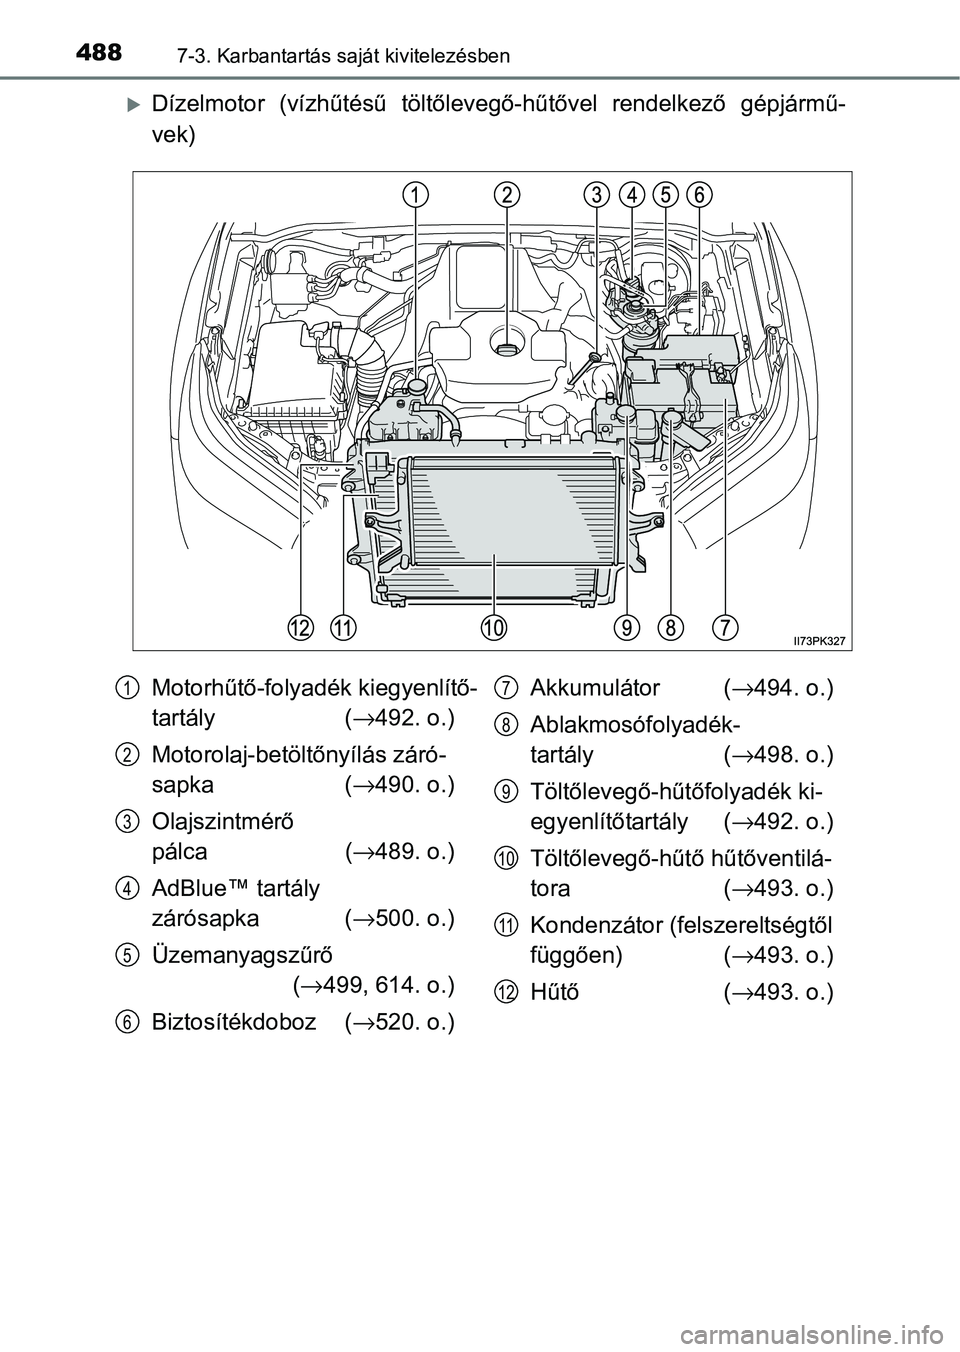 TOYOTA HILUX 2021  Kezelési útmutató (in Hungarian) 4887-3. Karbantartás saját kivitelezésben
Dízelmotor  (vízhűtésű  töltőlevegő-hűtővel  rendelkező  gépjármű-
vek)
Motorhűtő-folyadék kiegyenlítő-
tartály  ( →492. o.)
Motor